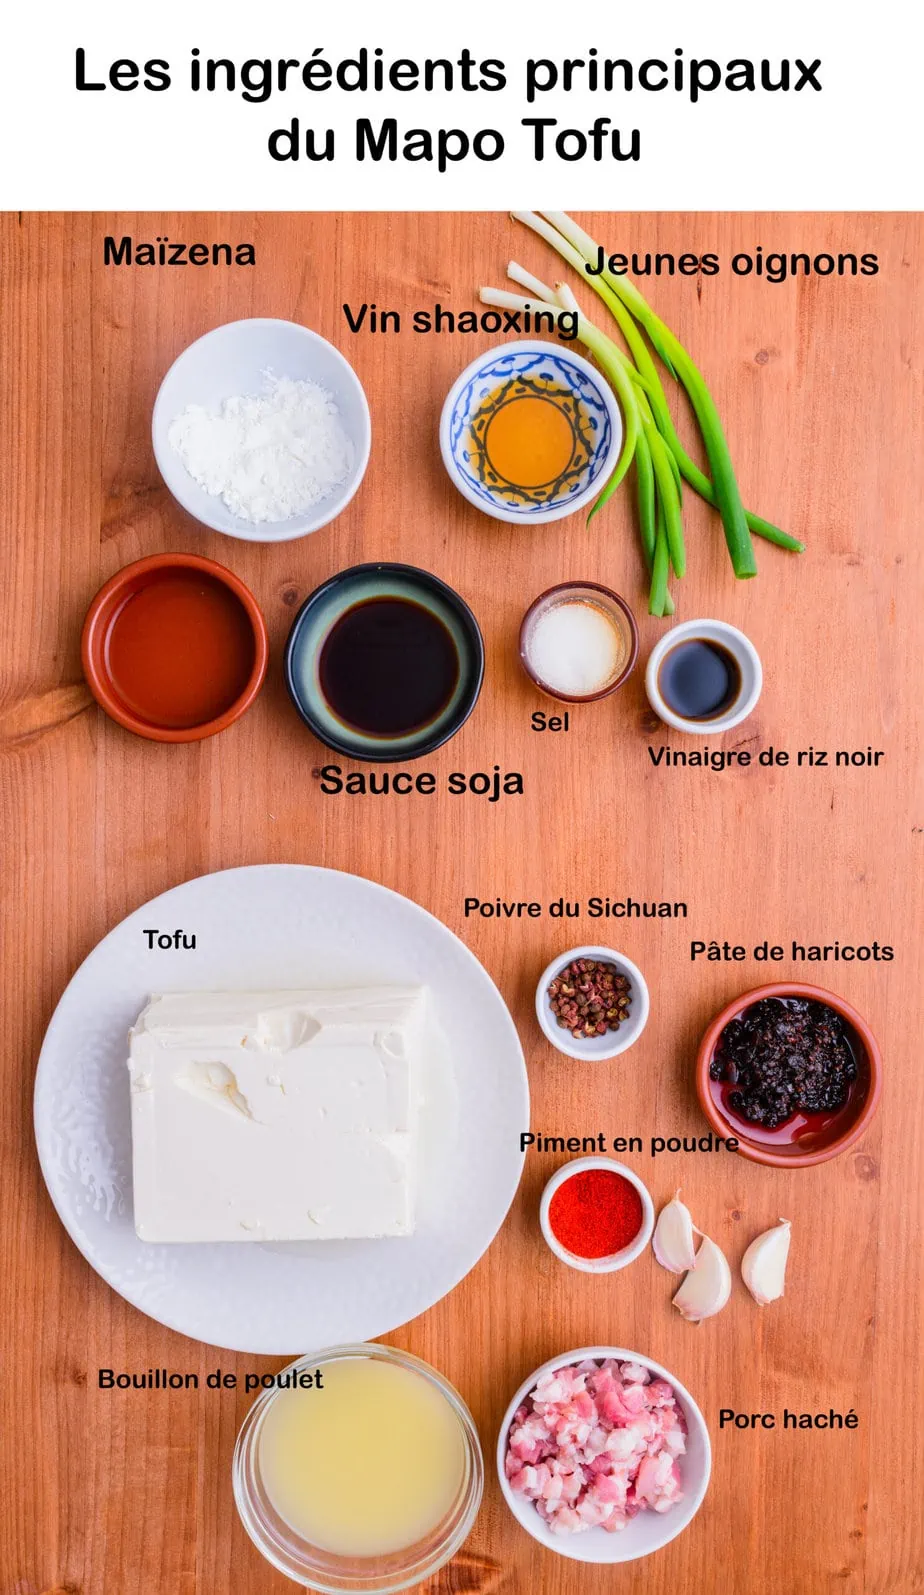 Les ingrédients principaux du mapo tofu sur une planche en bois